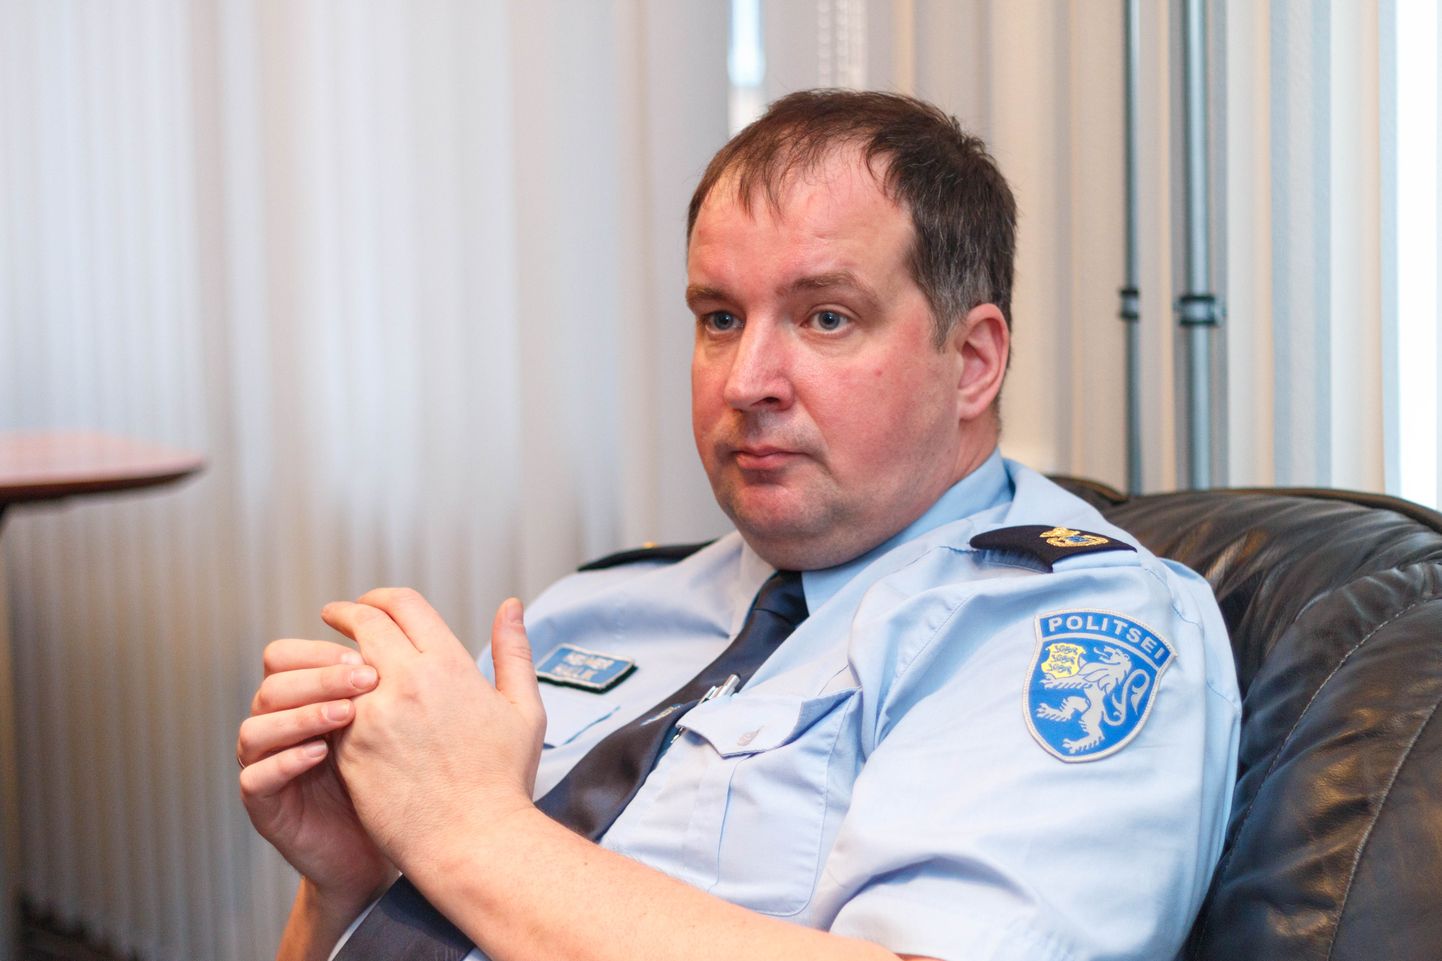 Alates 2. märtsist juhib häirekeskuse Lõuna keskust Helmer Hallik, kes on viimased aastad juhtinud Kagu politseijaoskonna tööd.